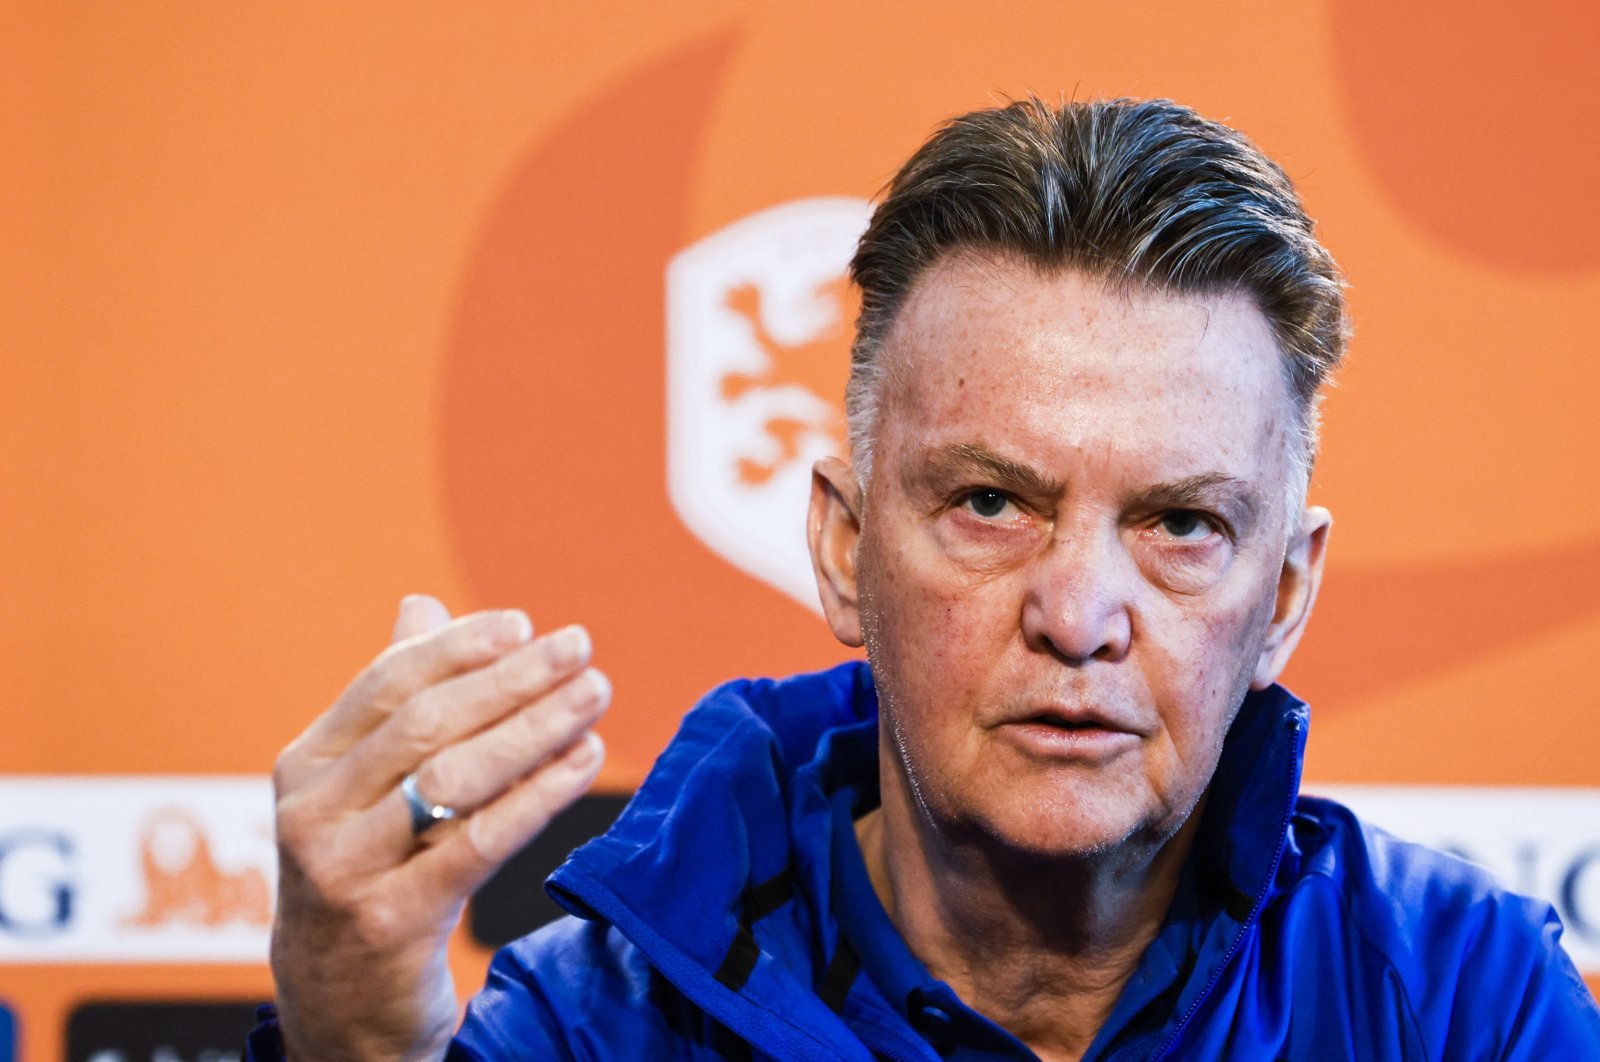 Pelatih tim nasional Belanda Louis van Gaal mengkonfirmasi mengalahkan kanker